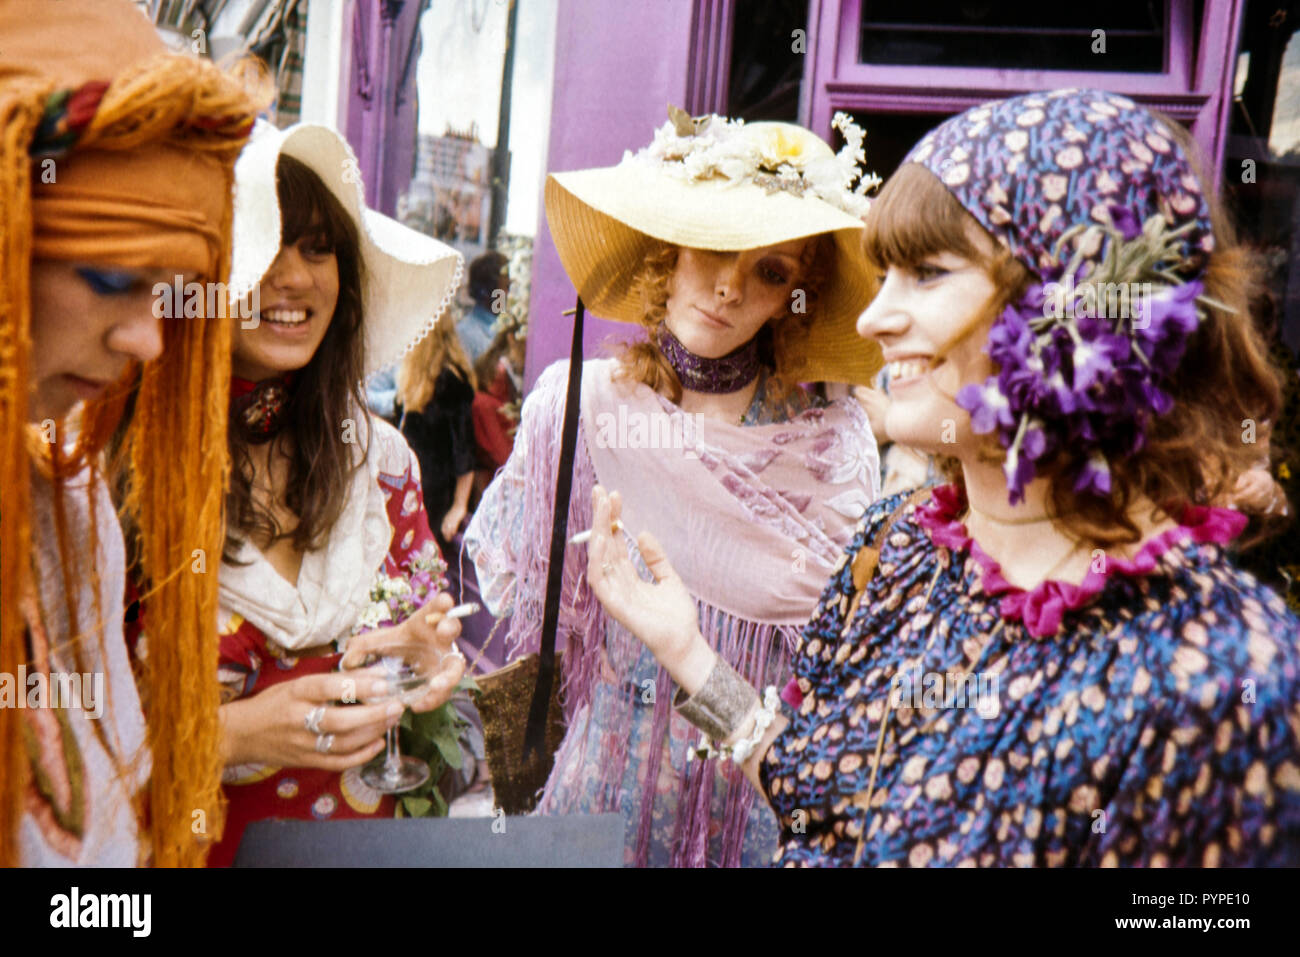 Les hippies chic et tendance. Les filles de Chelsea, Londres durant la fin des années 60, Colin Maher/Simon Webster Banque D'Images